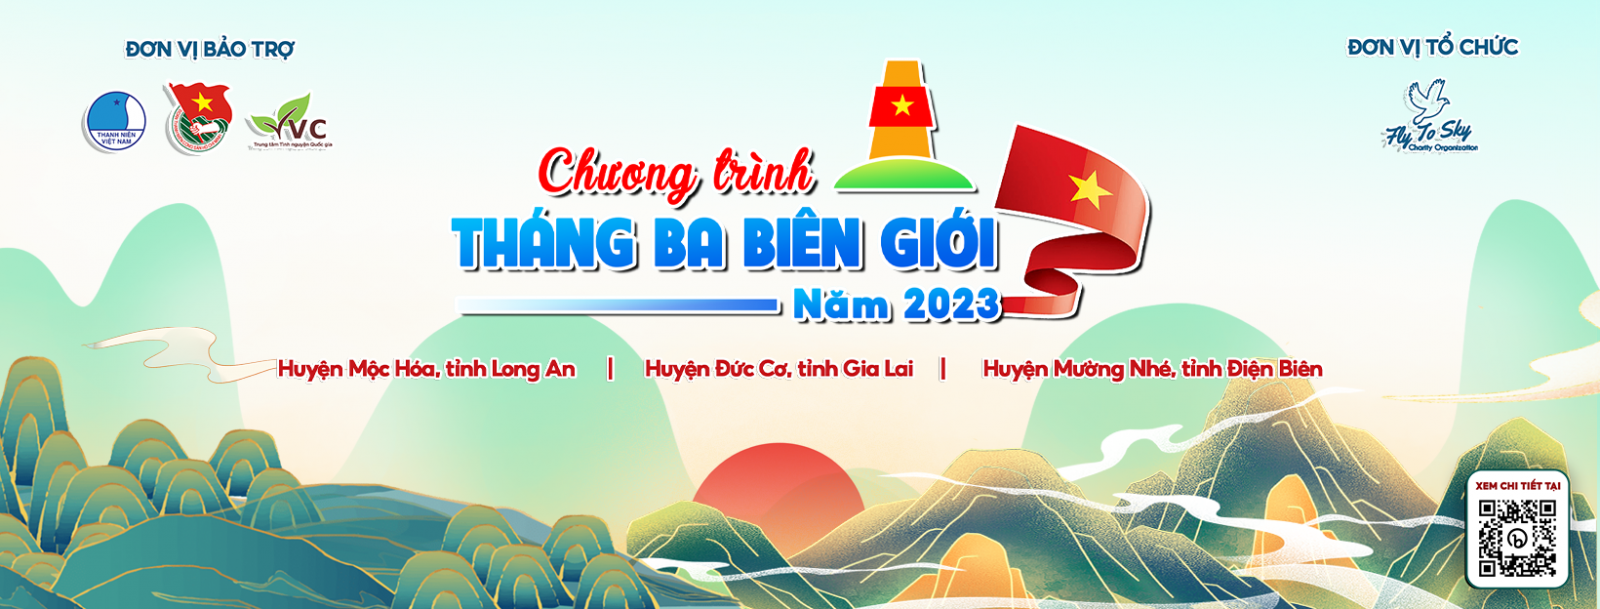 Tháng Ba Biên Giới năm 2024 sẽ là một sự kiện quan trọng, đánh dấu ổn định và hòa bình cho đất nước Việt Nam. Hãy cùng xem những hình ảnh liên quan để hiểu rõ hơn về sự kiện đặc biệt này, và cùng nhau chia sẻ niềm vui sự kiện này mang lại.